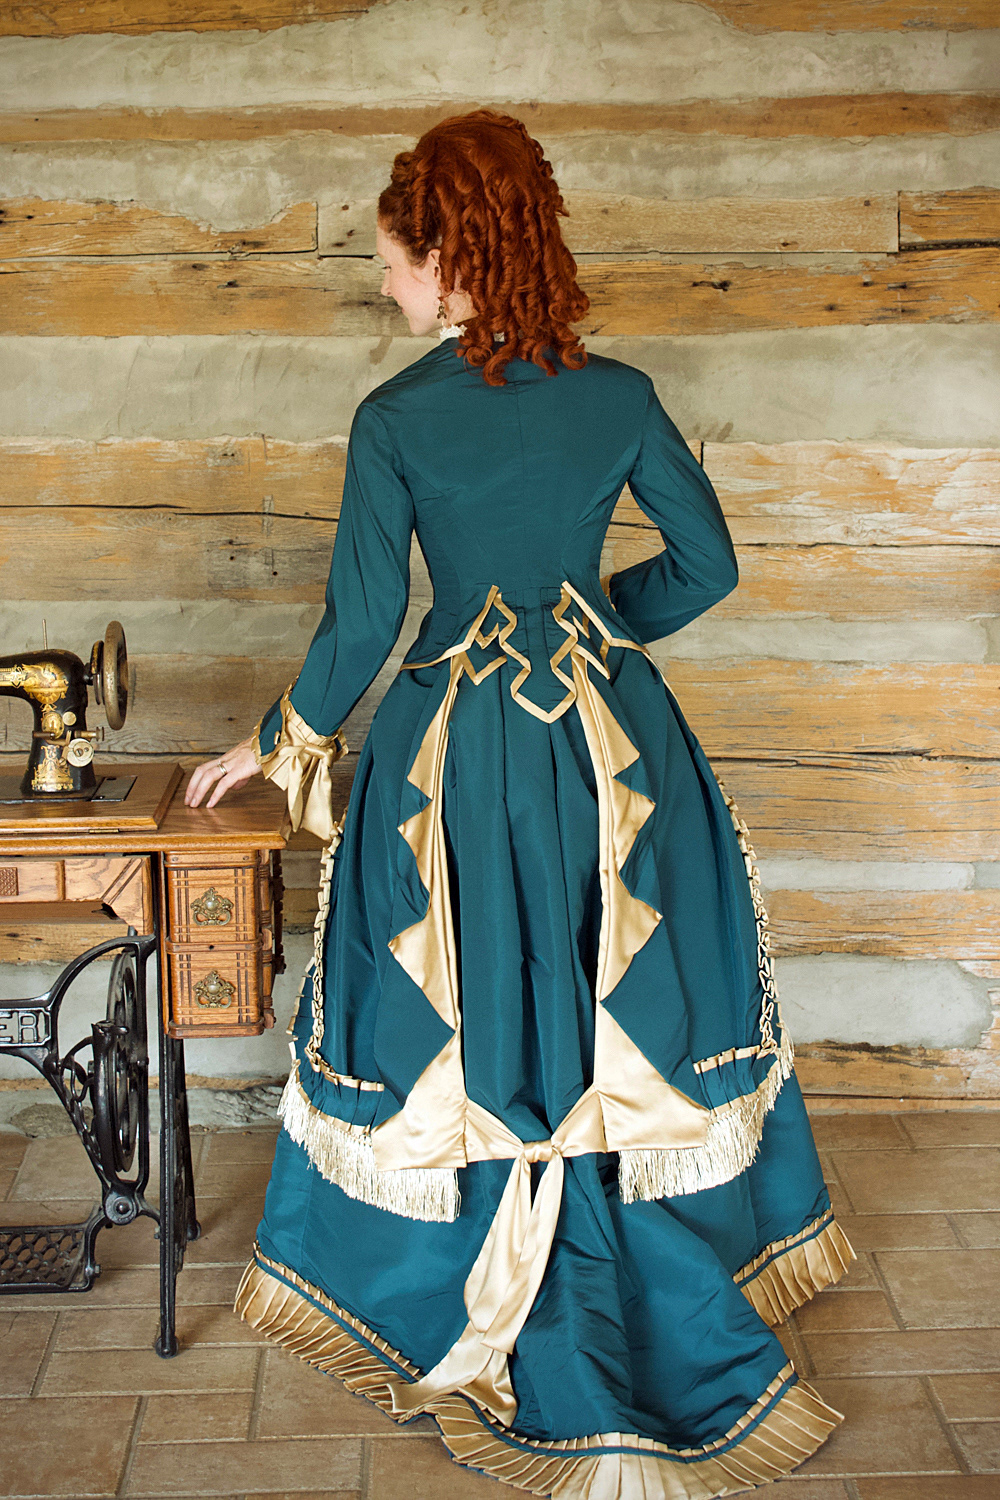 Atelier Delska Dressmaking - bespoke historical garments